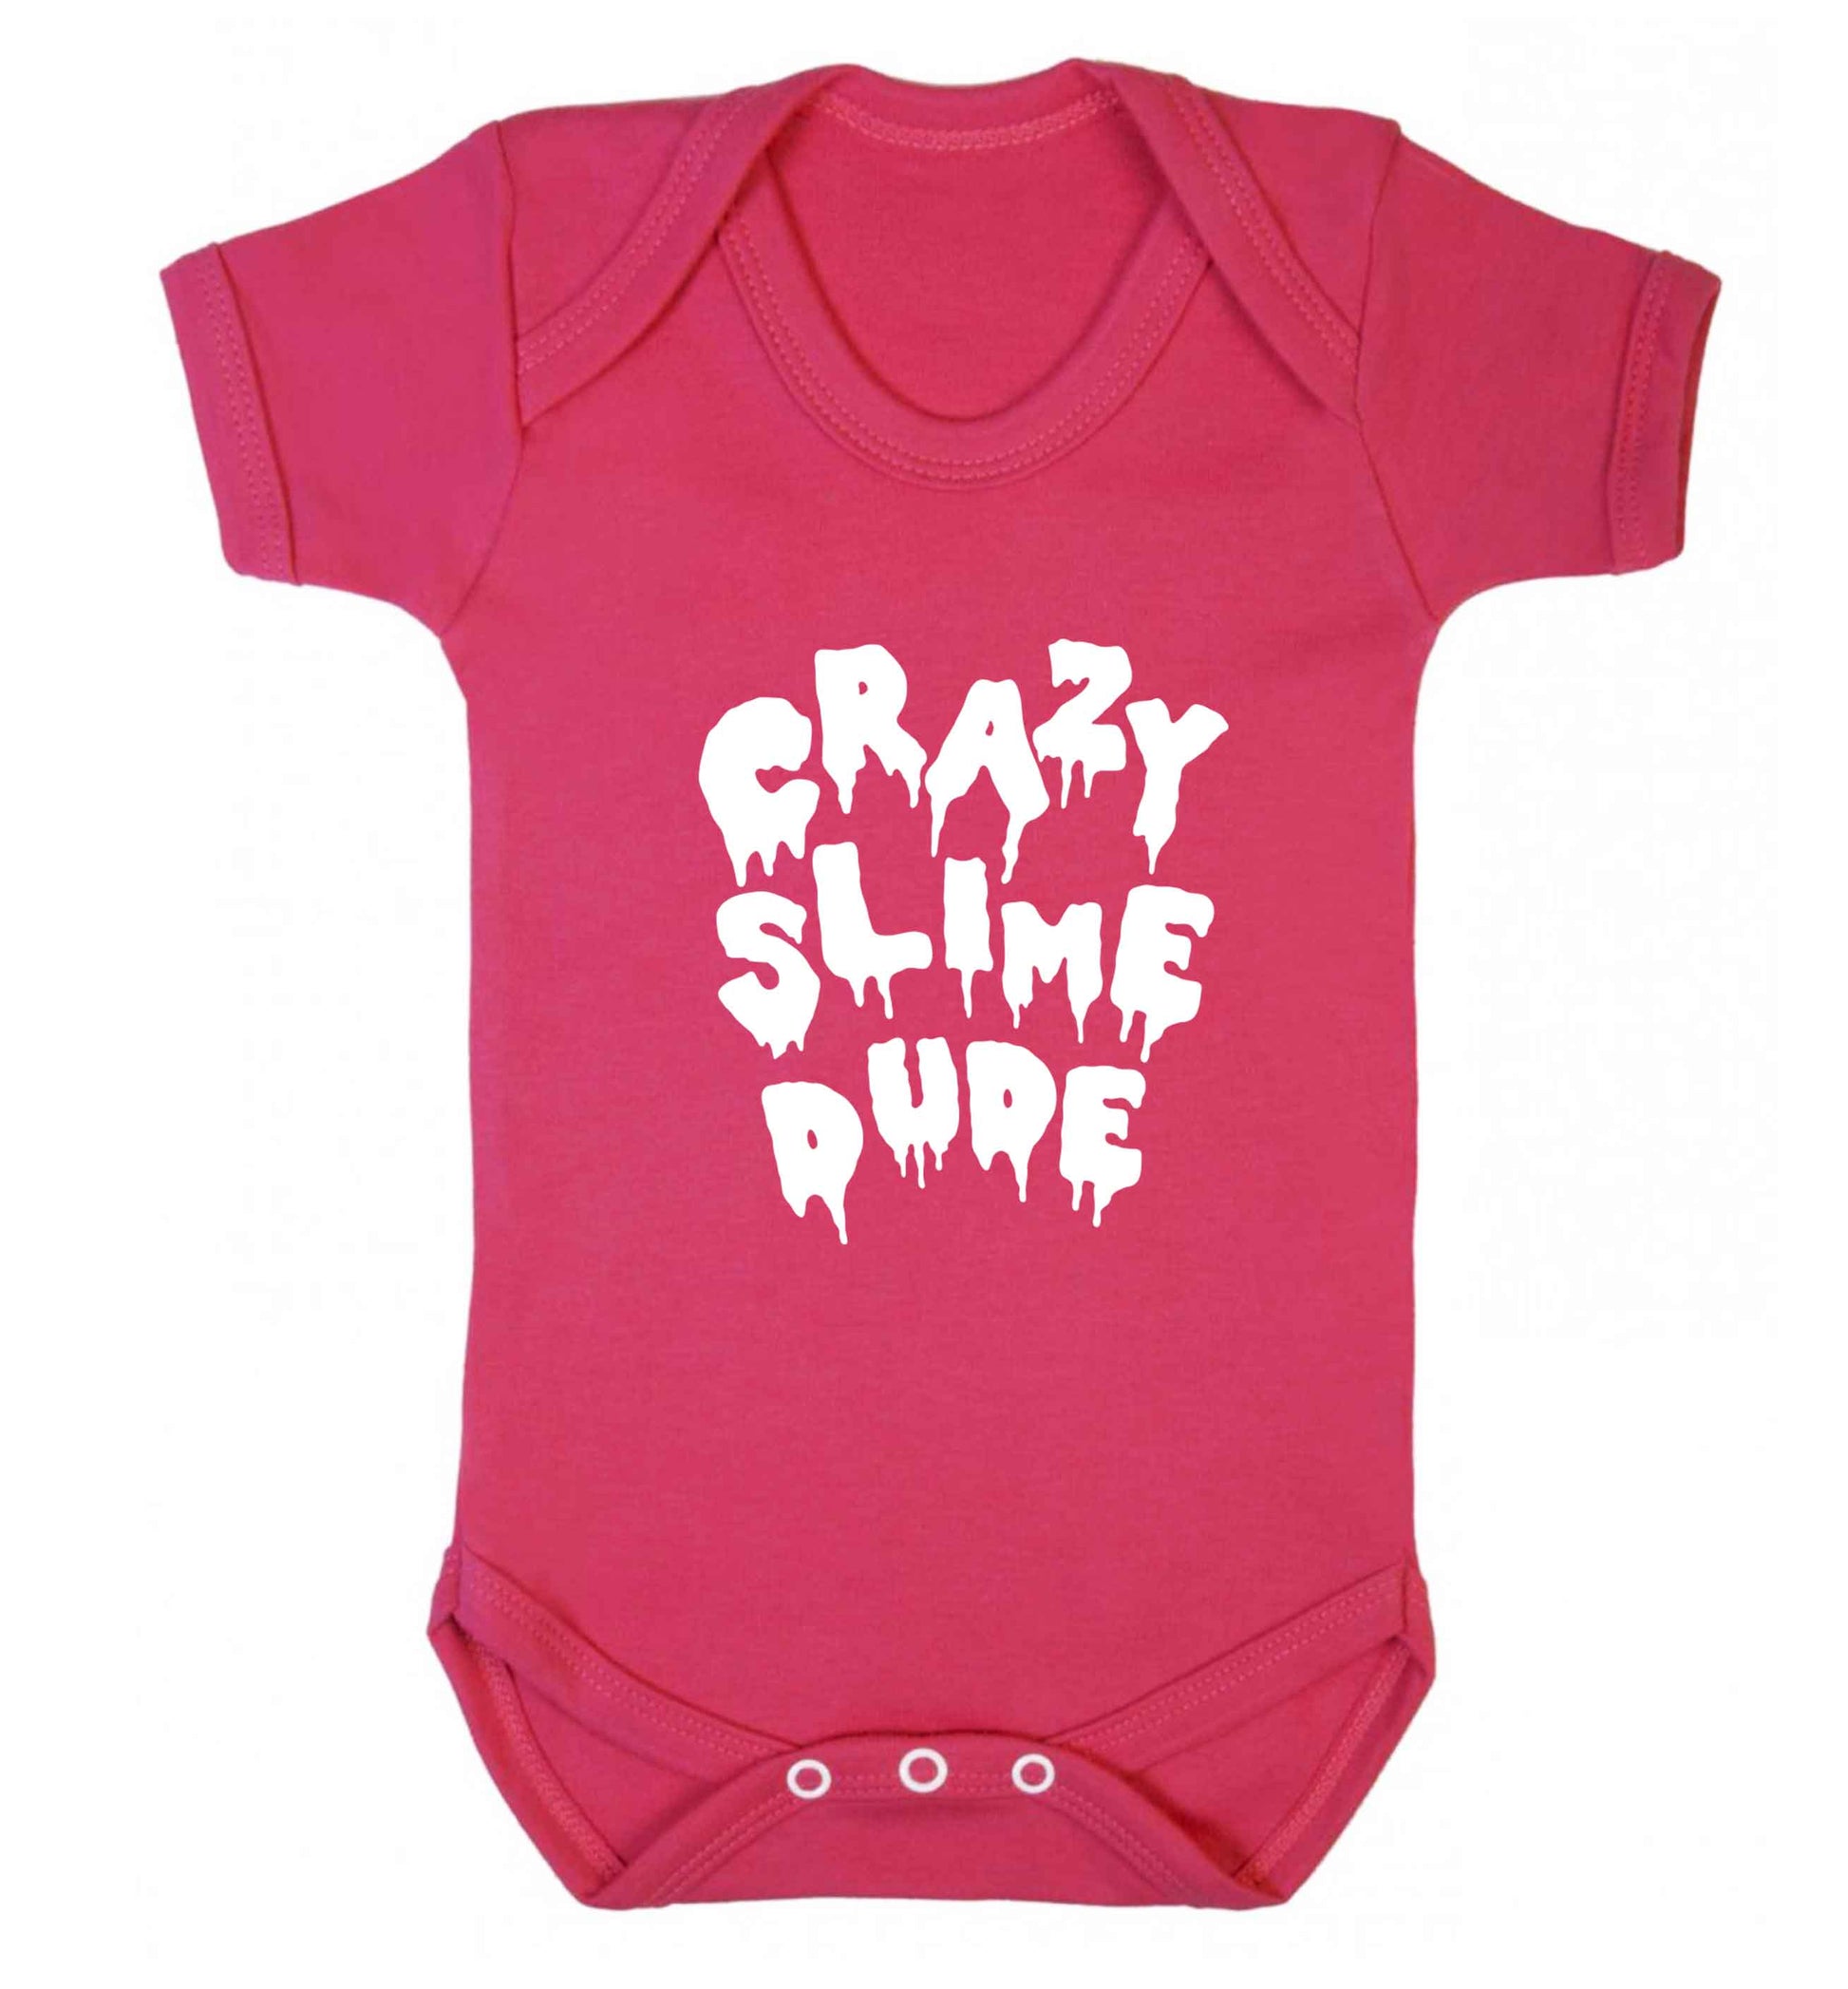 Crazy slime dude baby vest dark pink 18-24 months